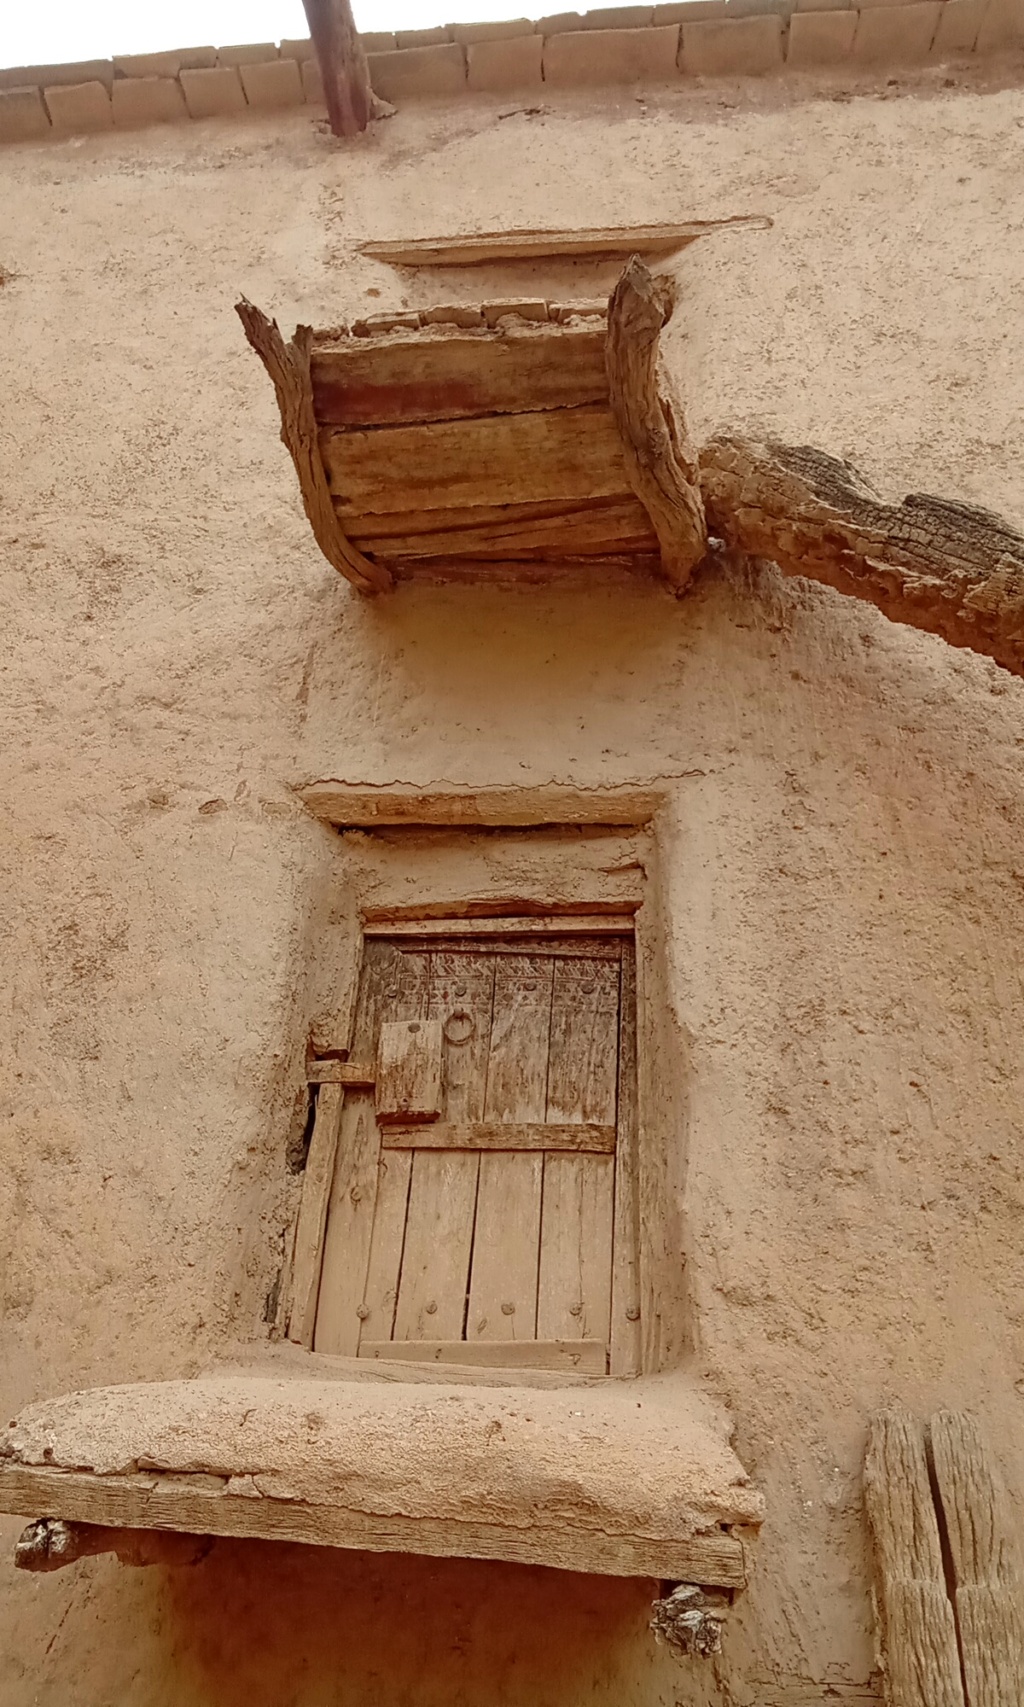 Maroc: visiter les greniers collectifs au Sud de l'Atlas Img_2464